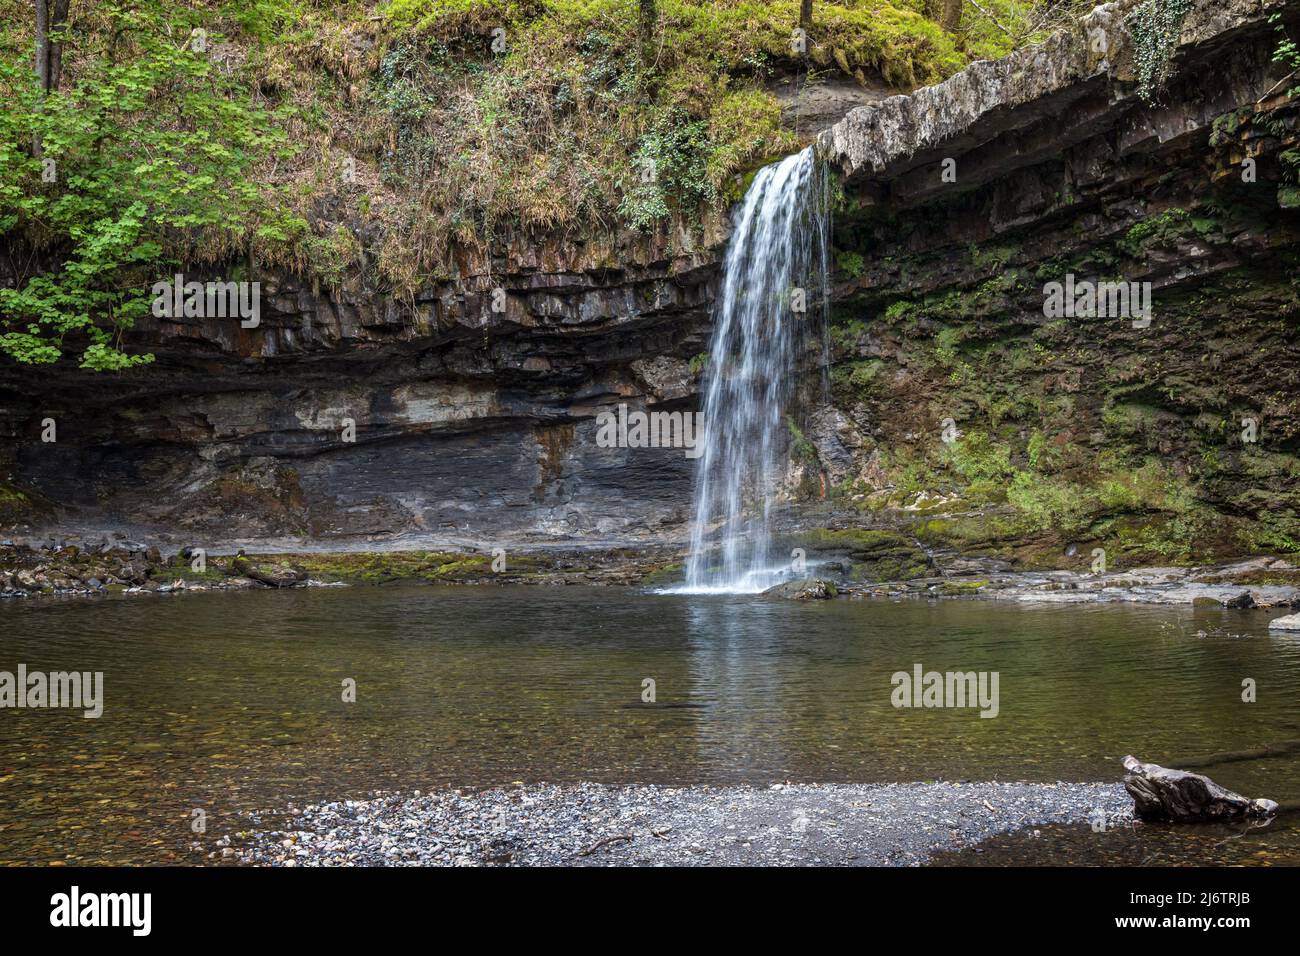 La cascade Sgwd Gwladys (Lady Falls) sur la rivière Afon Pyrddin près de Pontneddfechan dans le parc national de Brecon Beacons, au pays de Galles. Banque D'Images